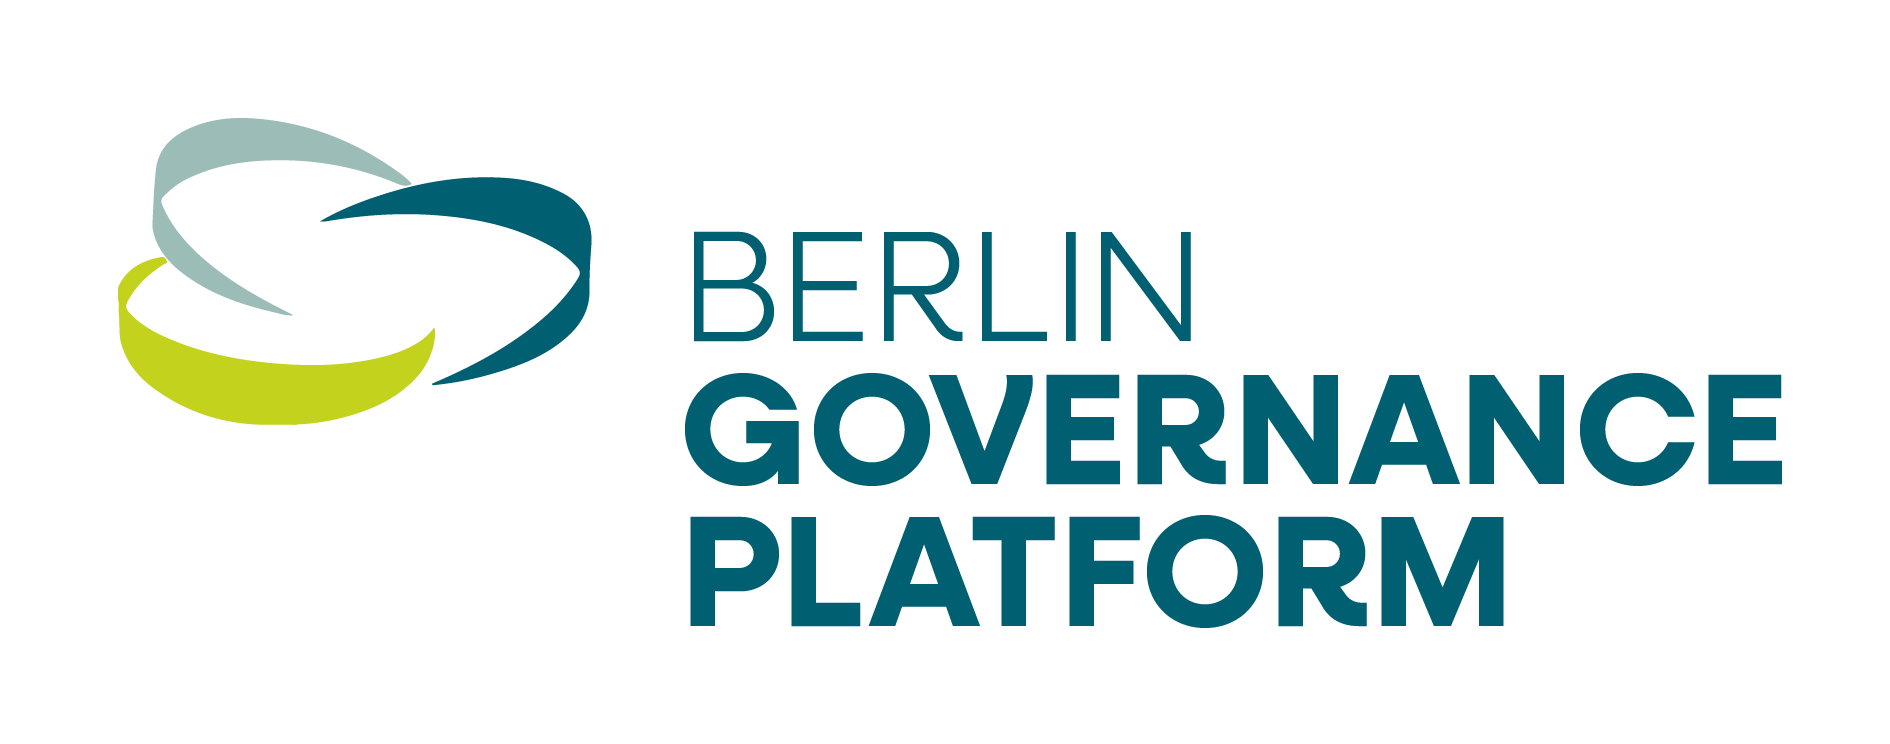 Das Logo der Berlin Governance Platform in drei Farben inklusive SIGNET-Schriftzug. Wir arbeiten als gemeinnützige Gesellschaft im Dienst der Förderung von Good Governance, entwickeln Projekte und Konzepte. Wir schaffen Räume für alle, die eine gerechte und nachhaltige Zukunft mitgestalten wollen.